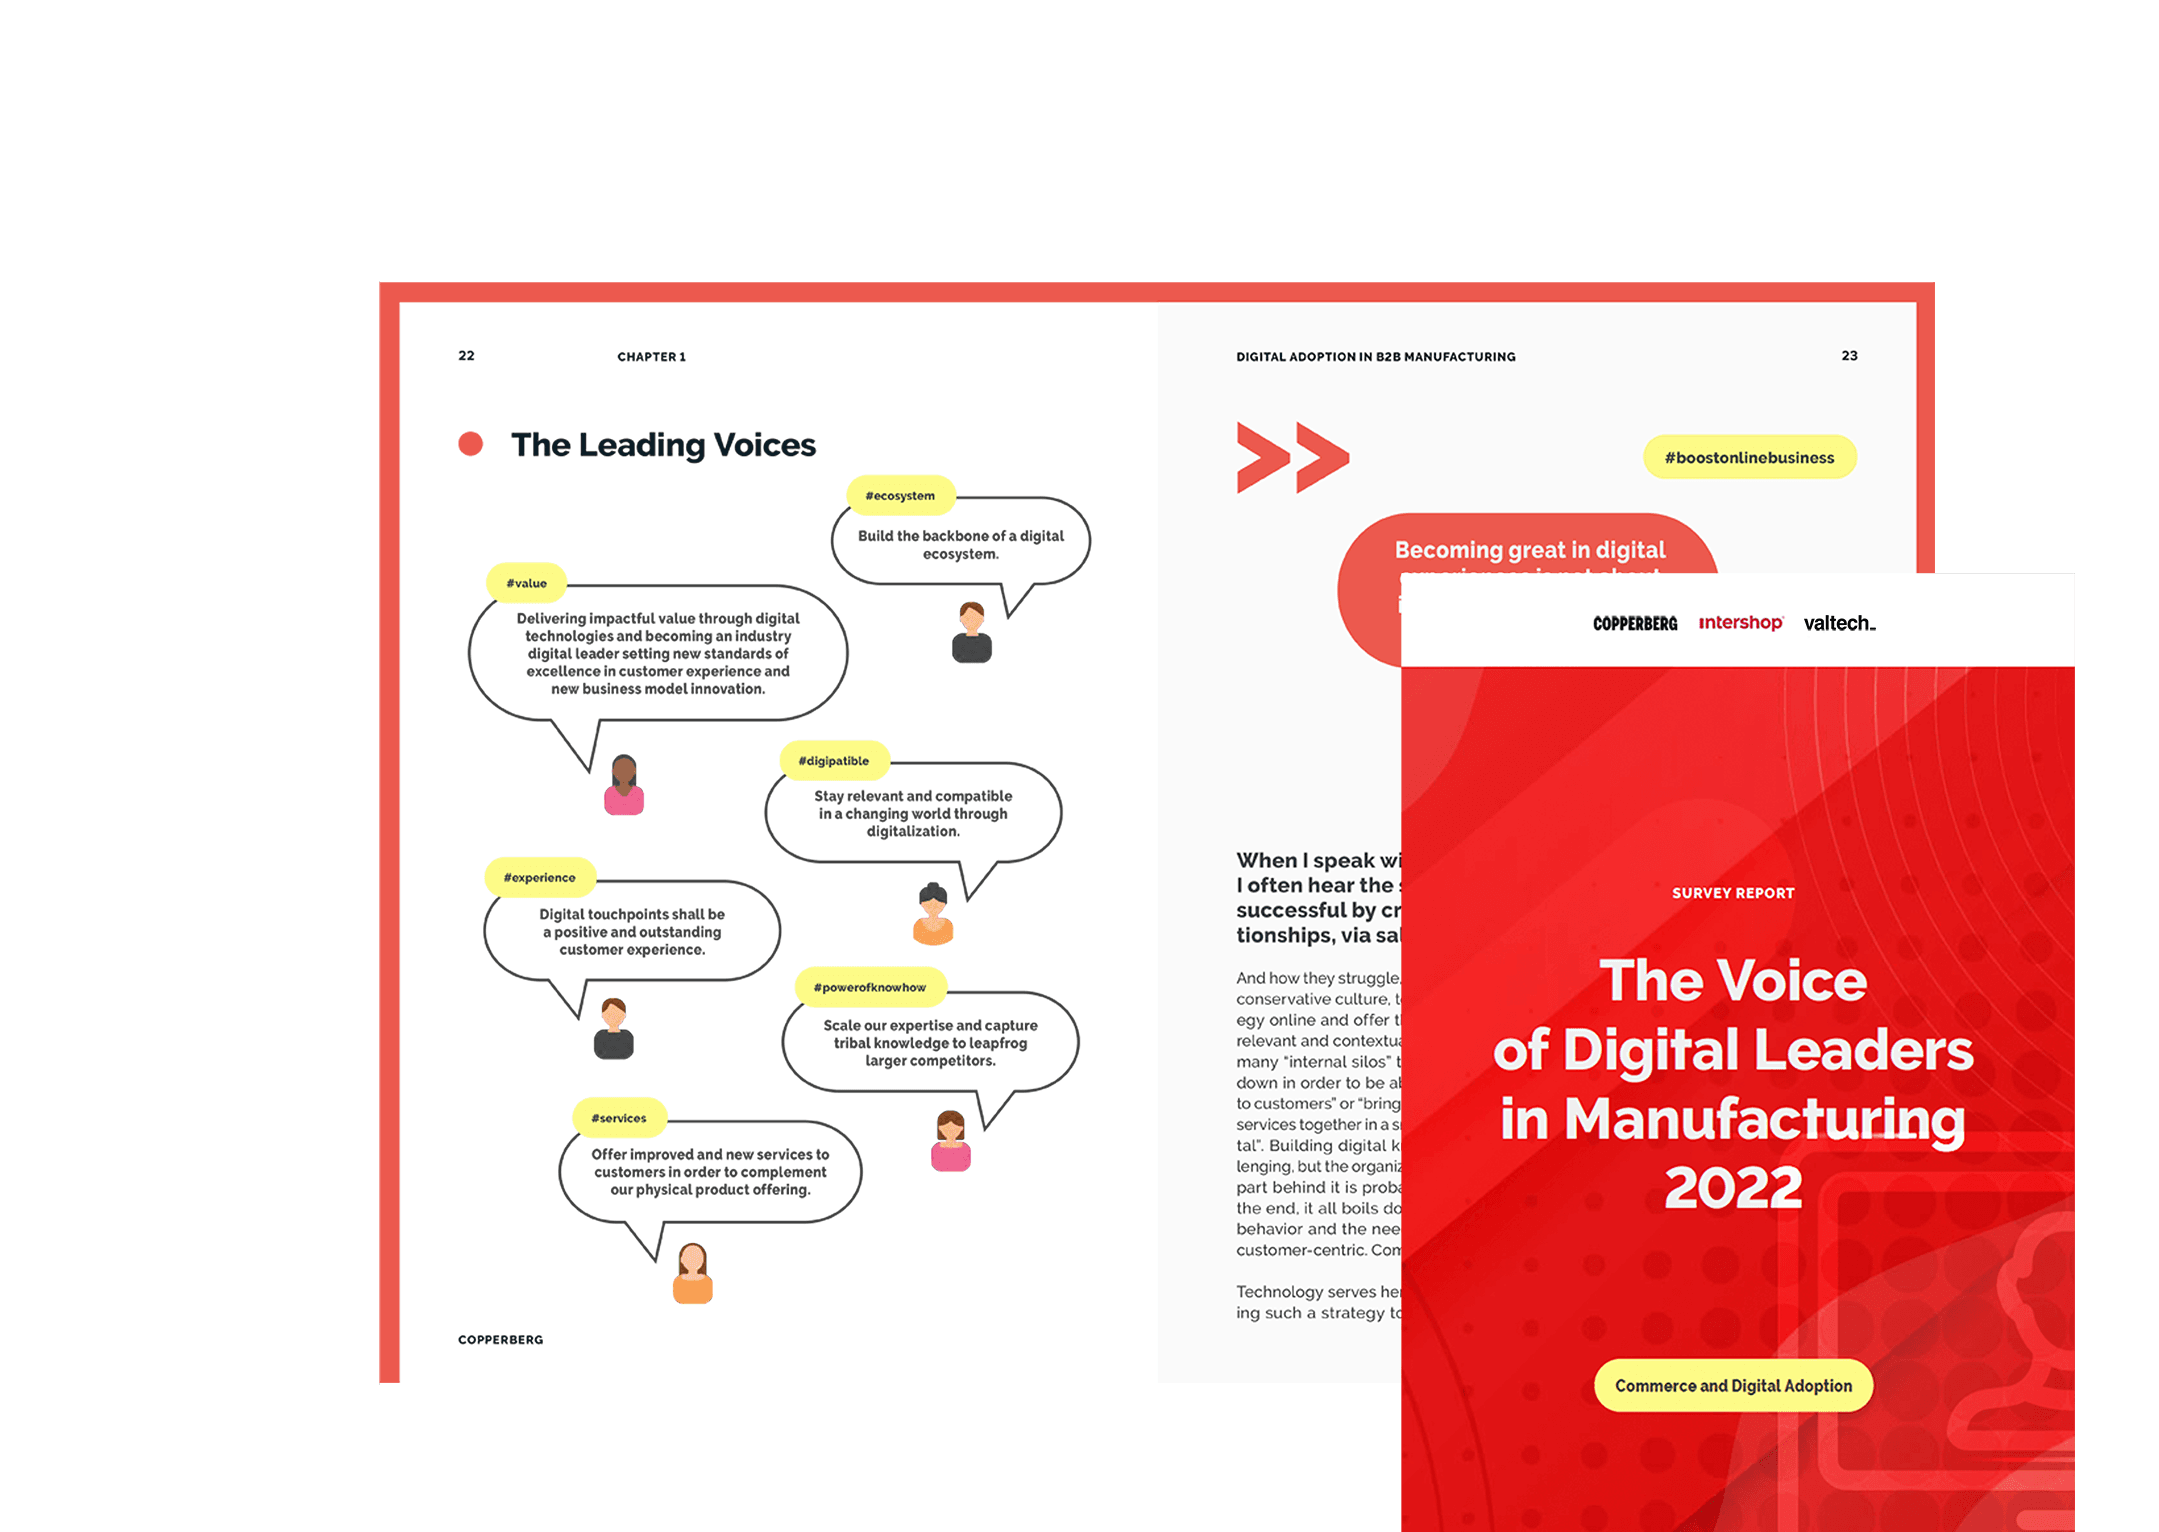 Intershop_Survey-Report_The Voice-of-Digital-Leaders-in-Manufacturing-2022_header_LP_EN